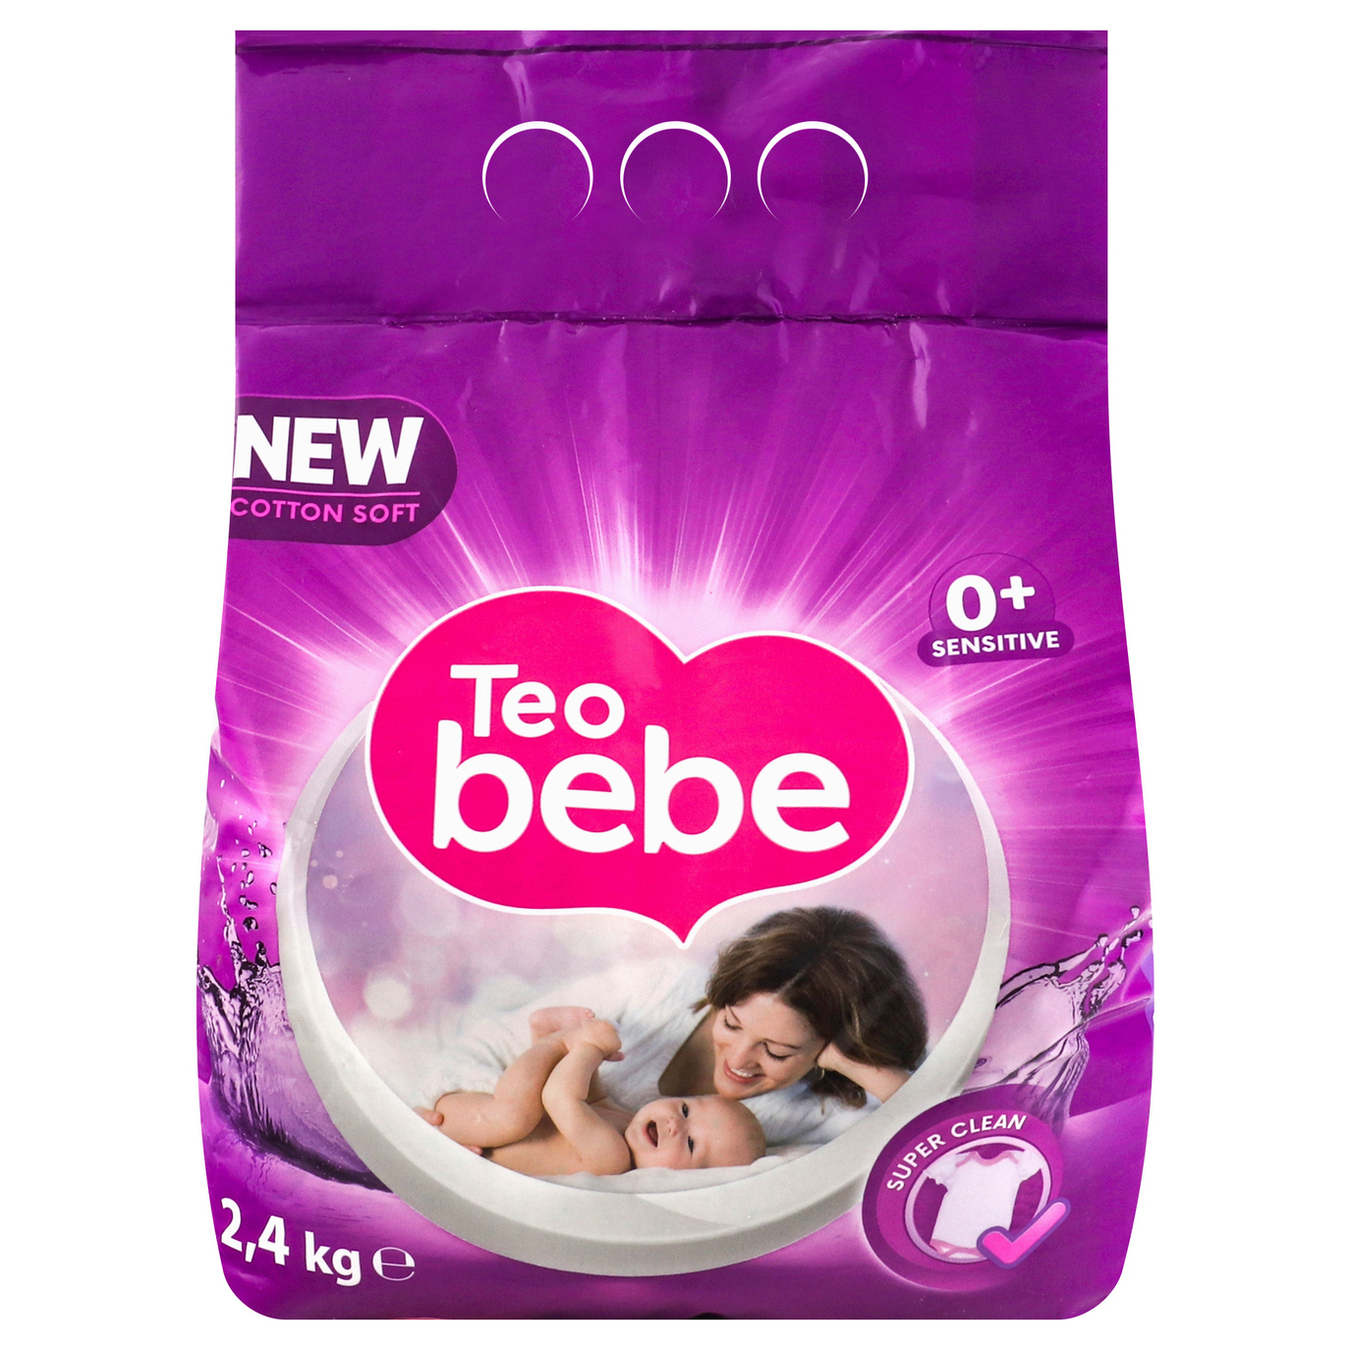 Teo Bebe Violet Powder Detergent for Baby Clothes 24kg